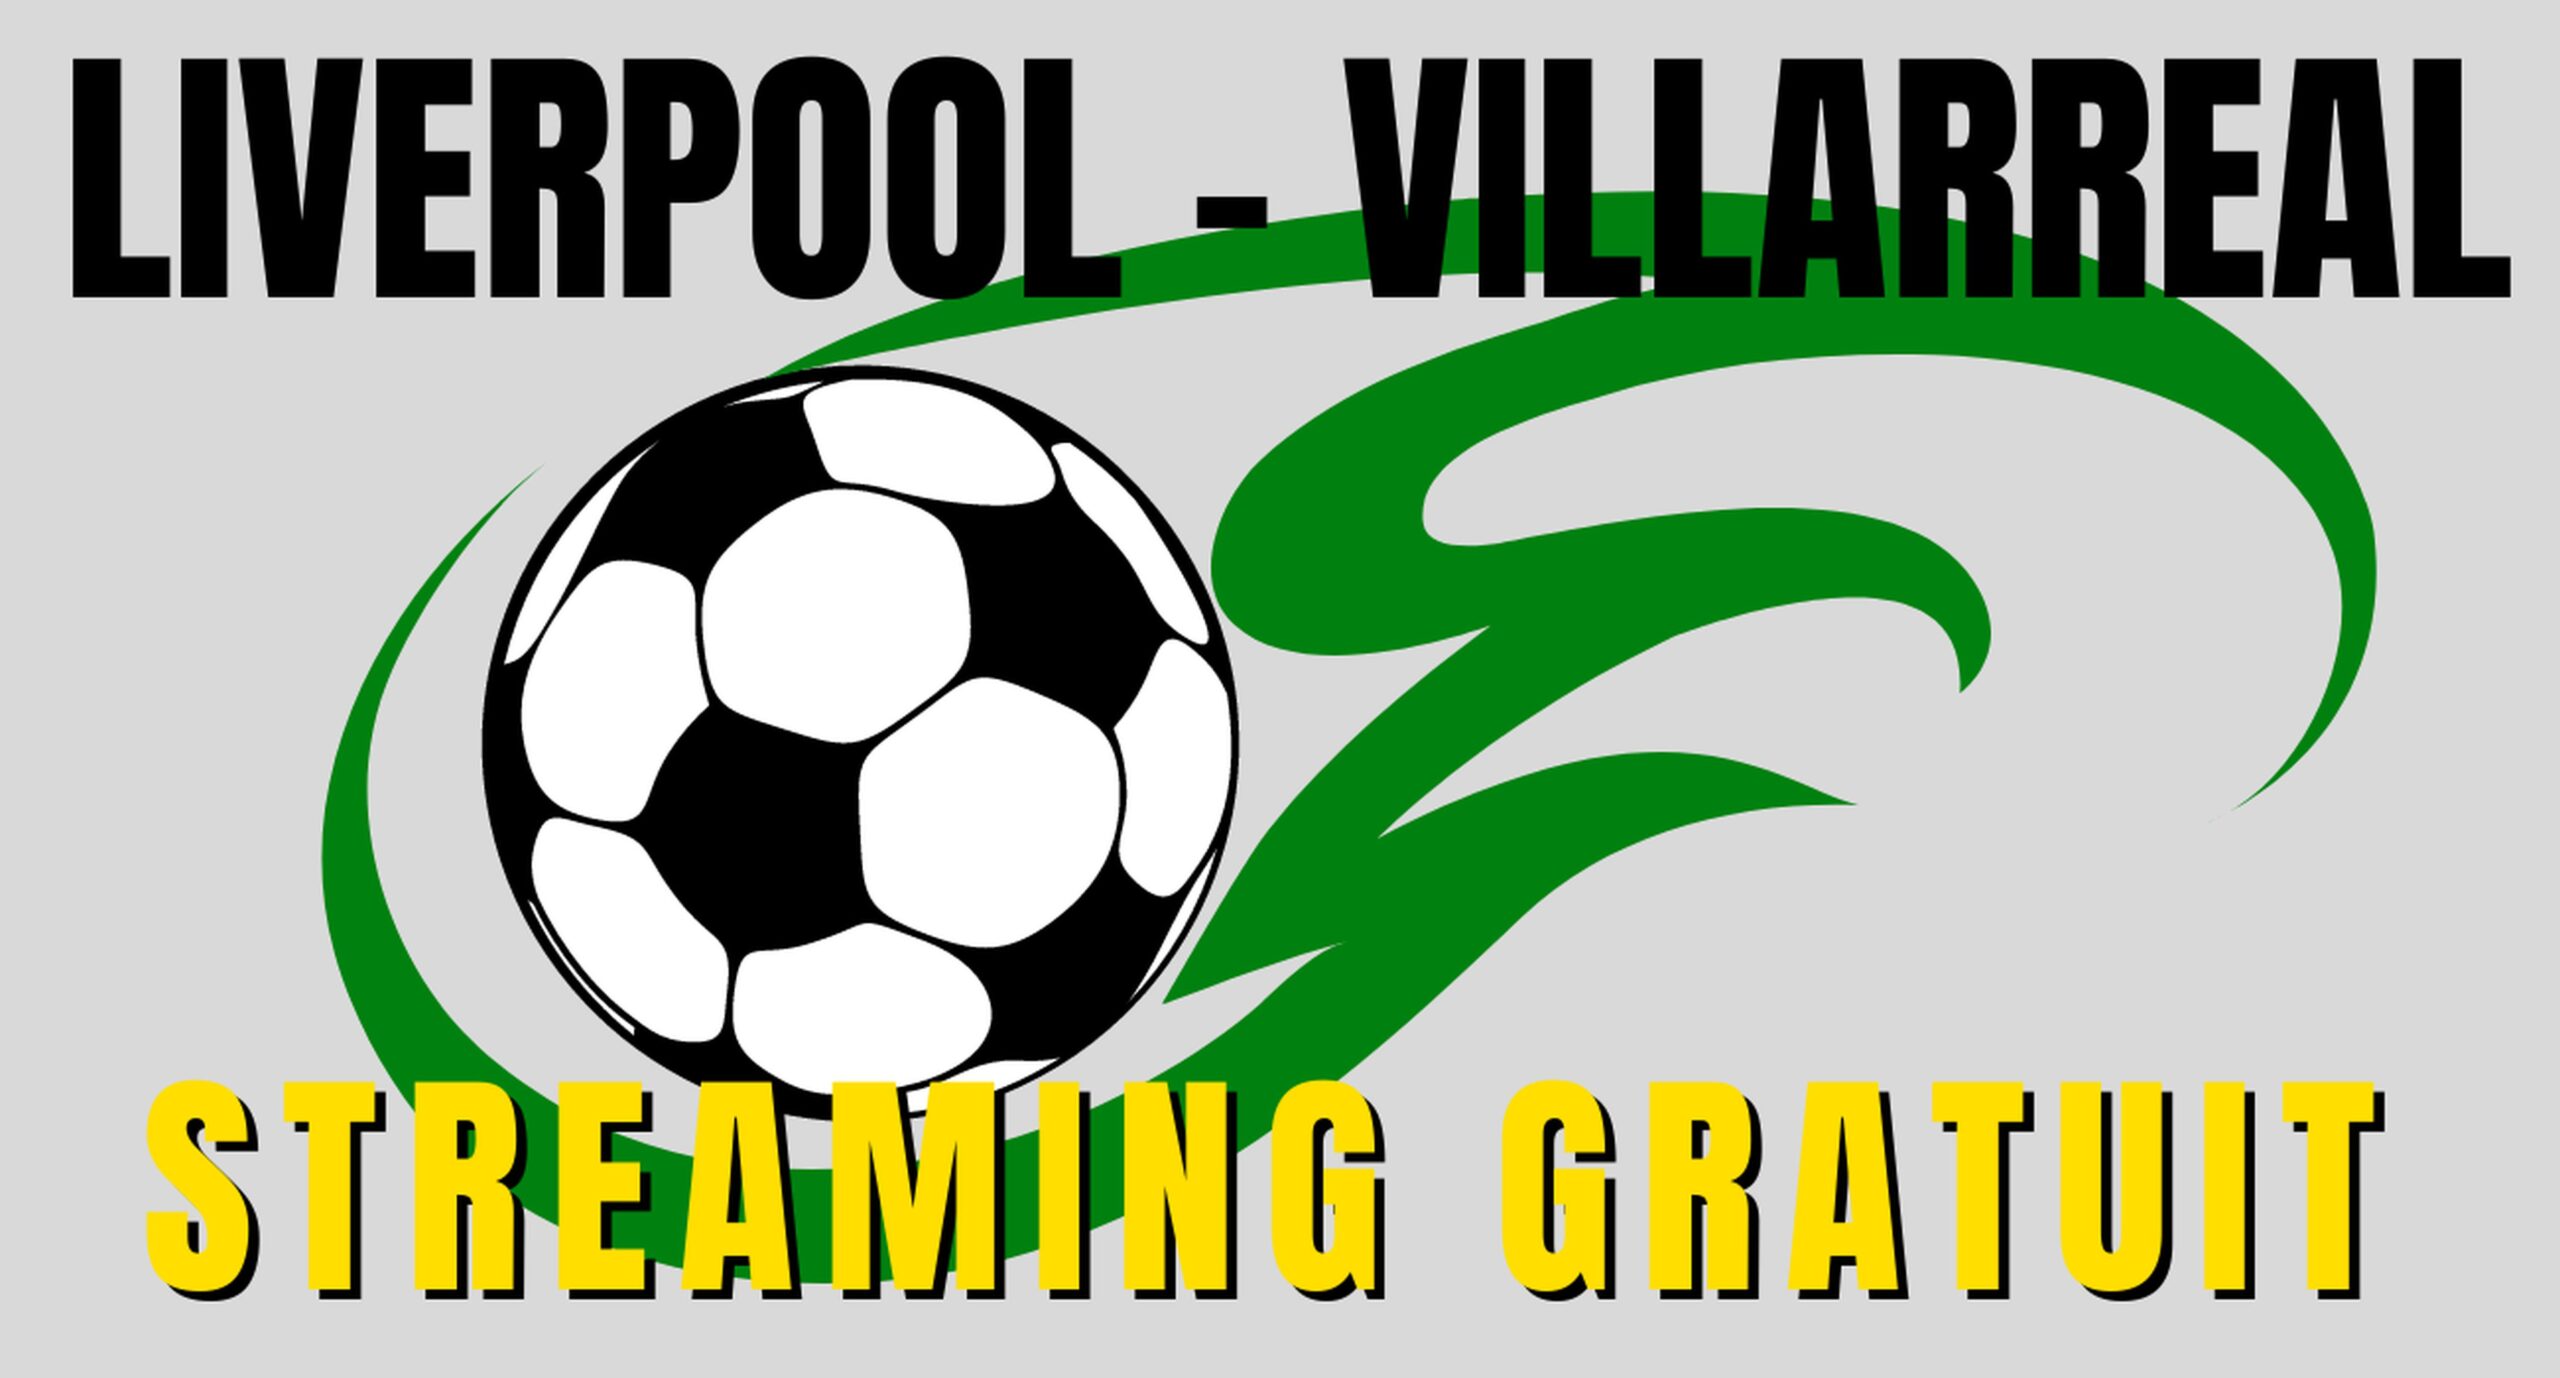 Liverpool Villarreal en Streaming gratuit sur une chaîne étrangère